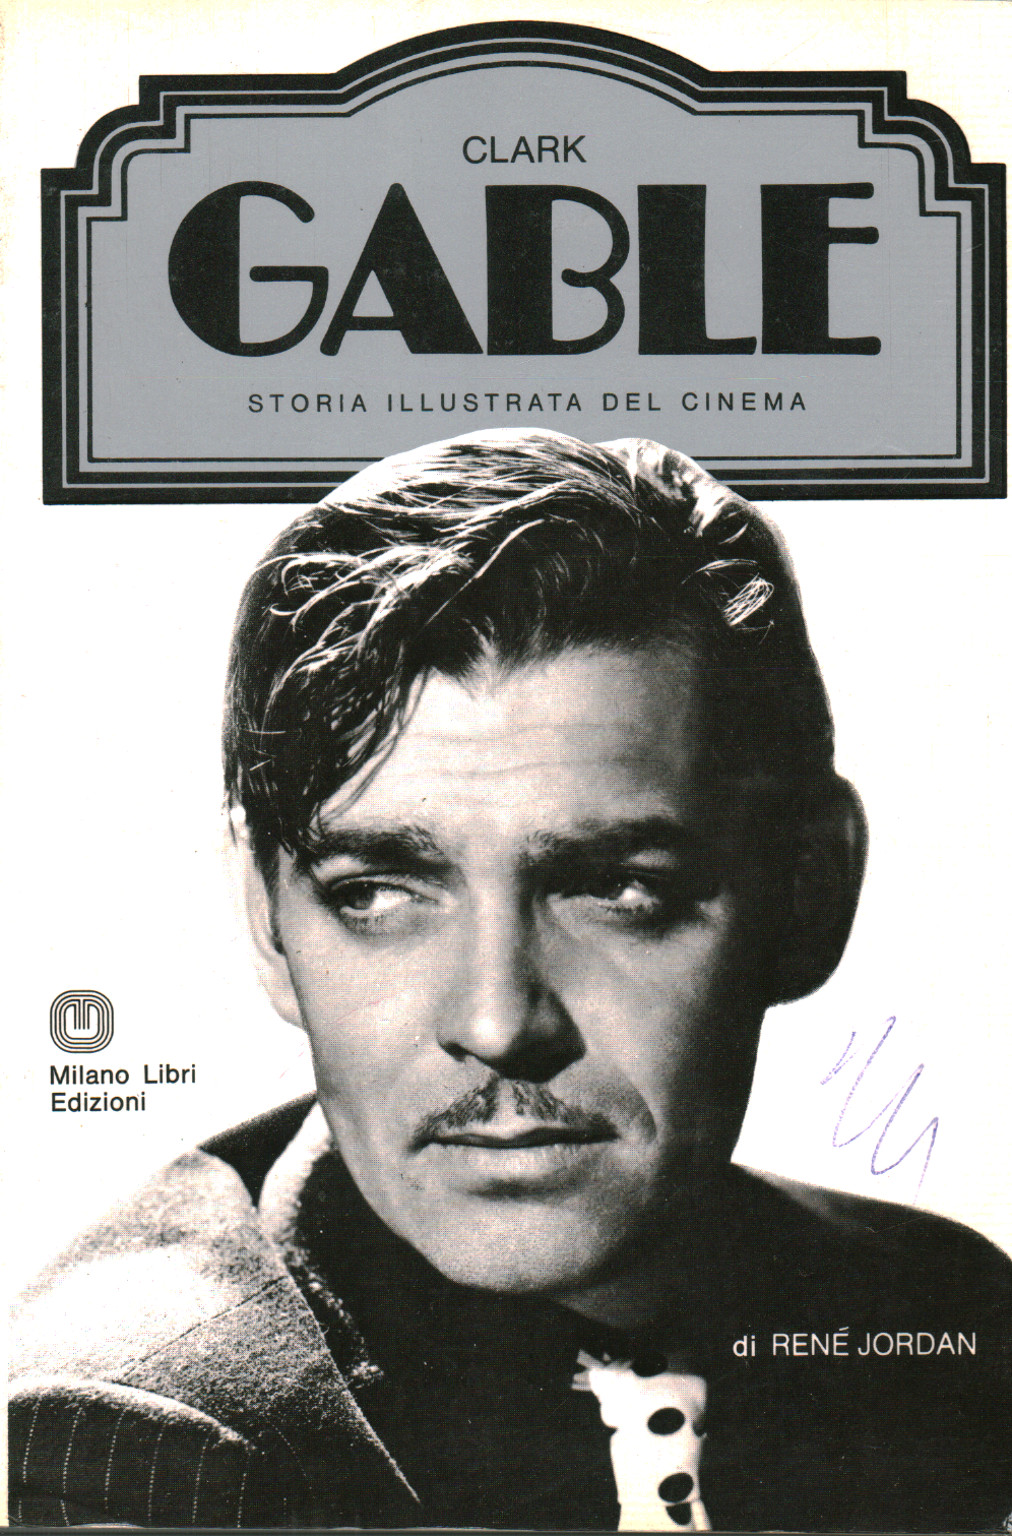 Clark Gable. Storia illustrata del cinema, s.a.